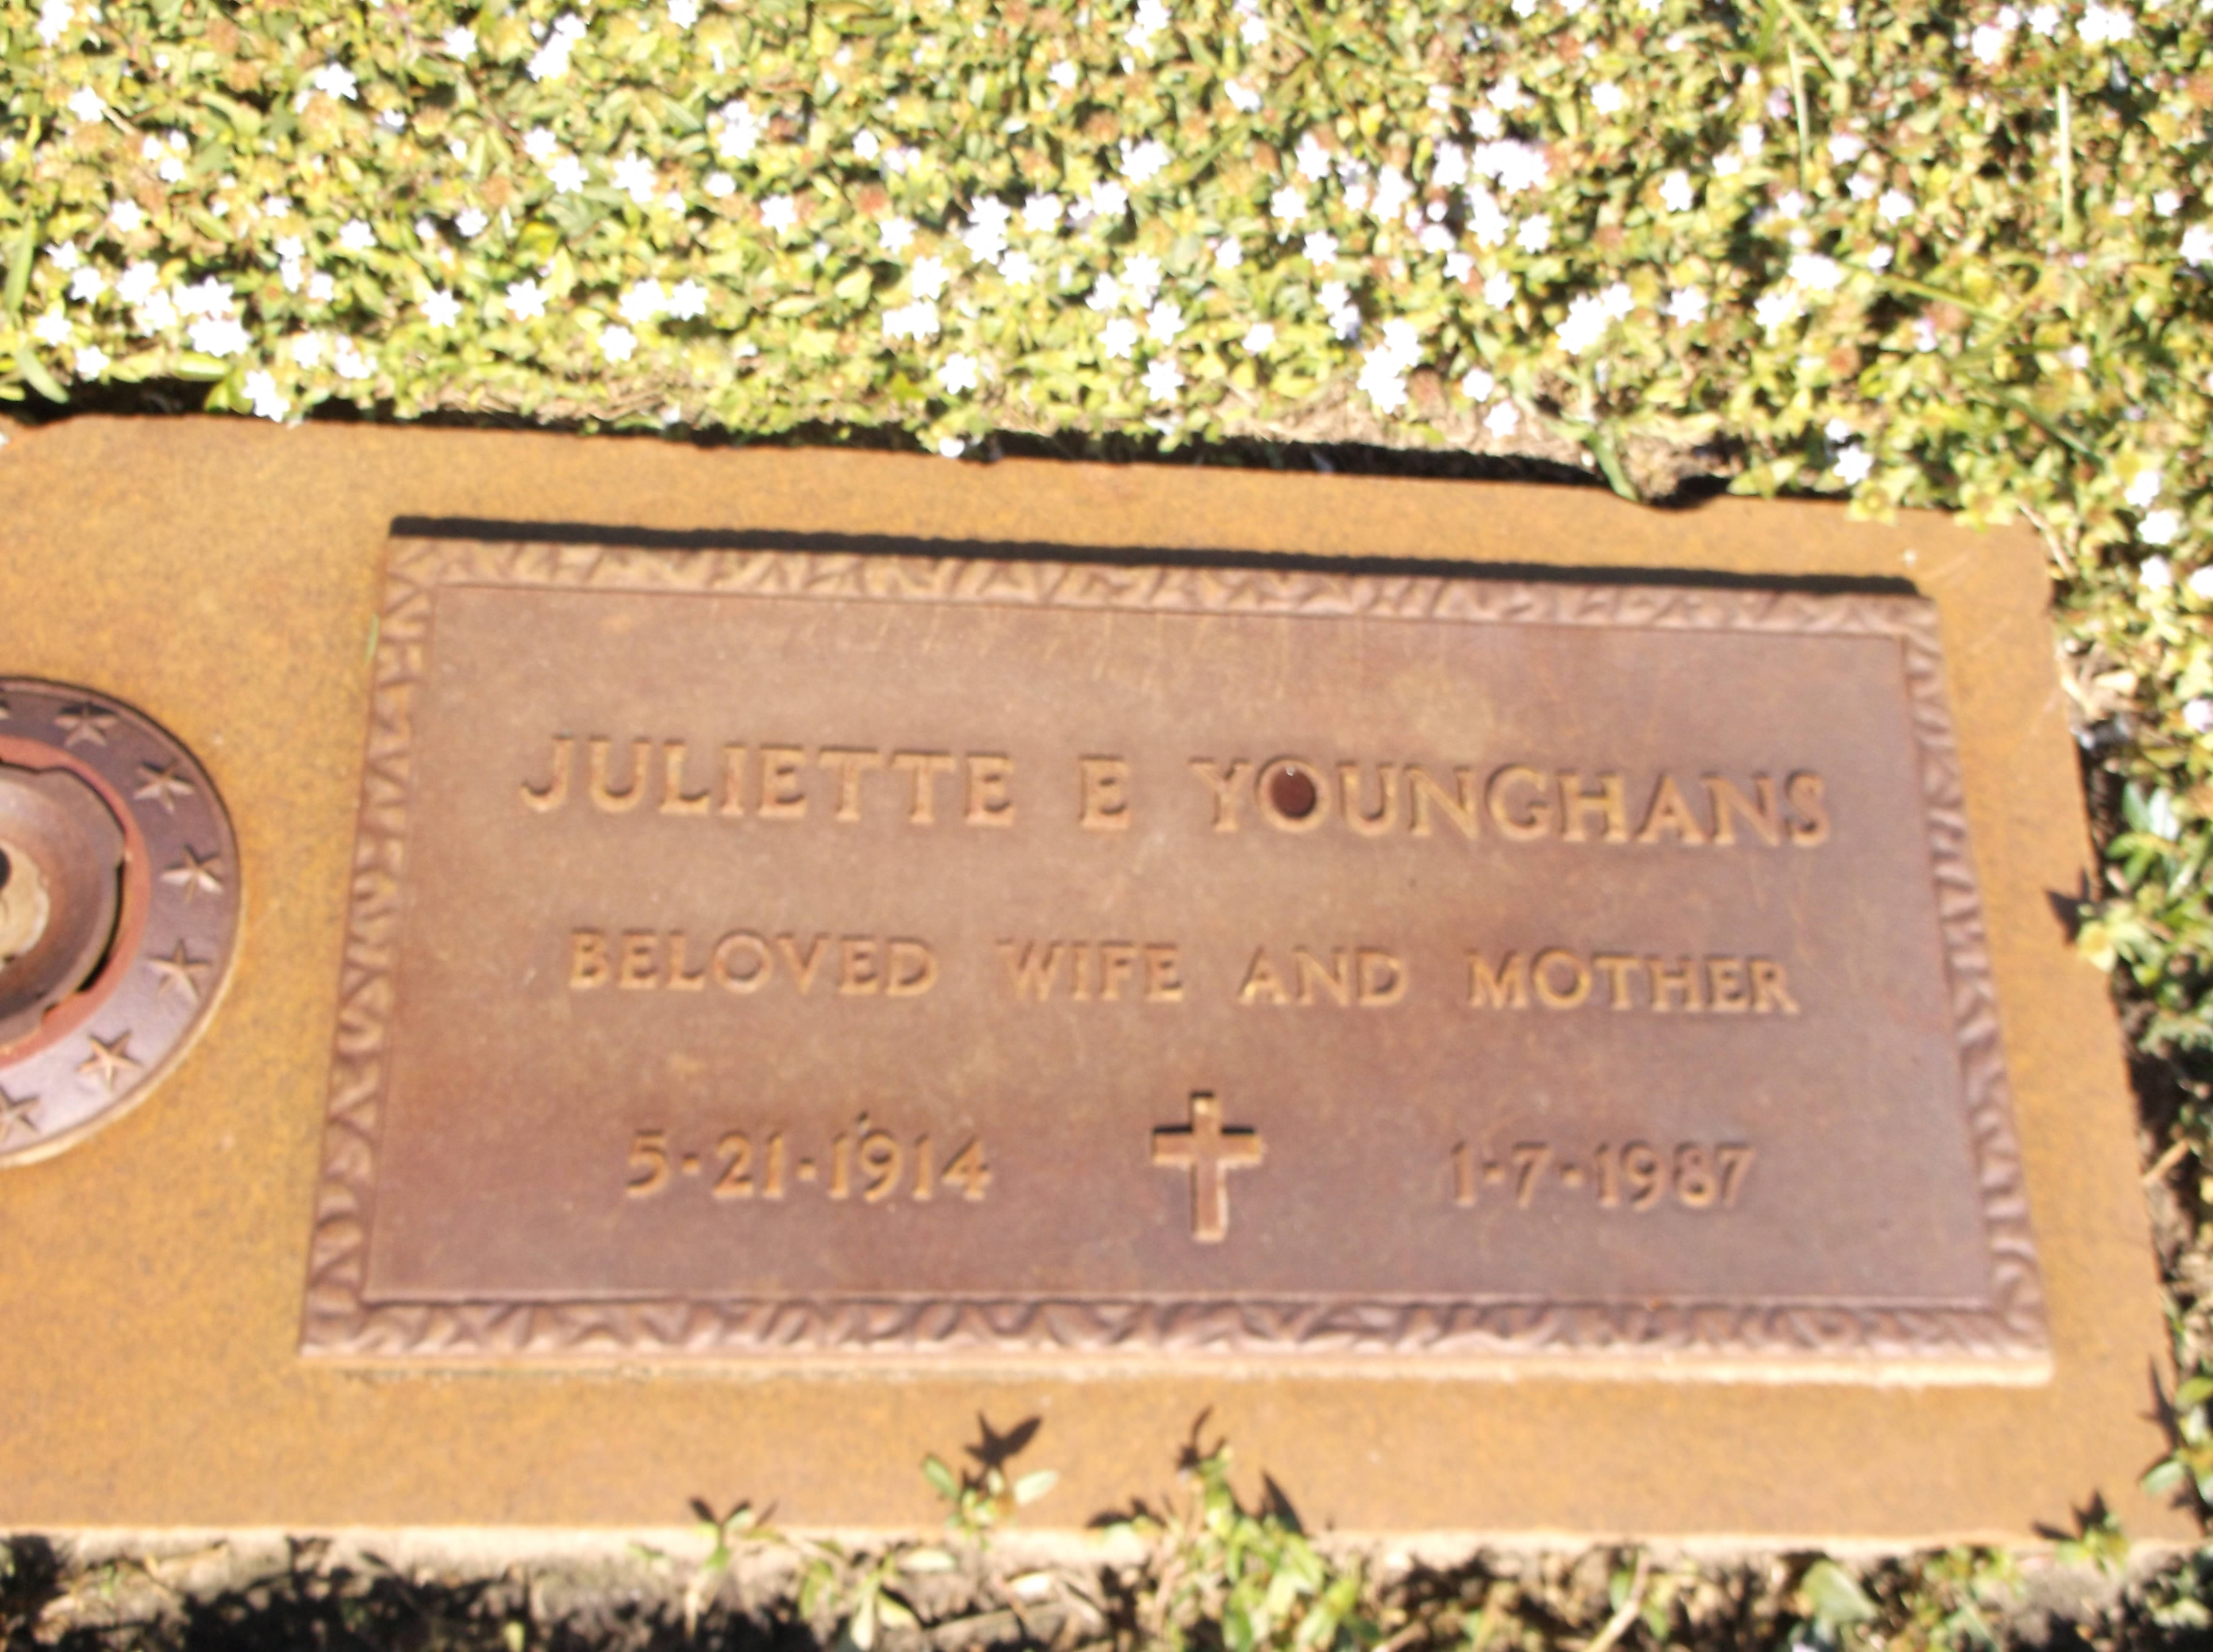 Juliette E Younghans